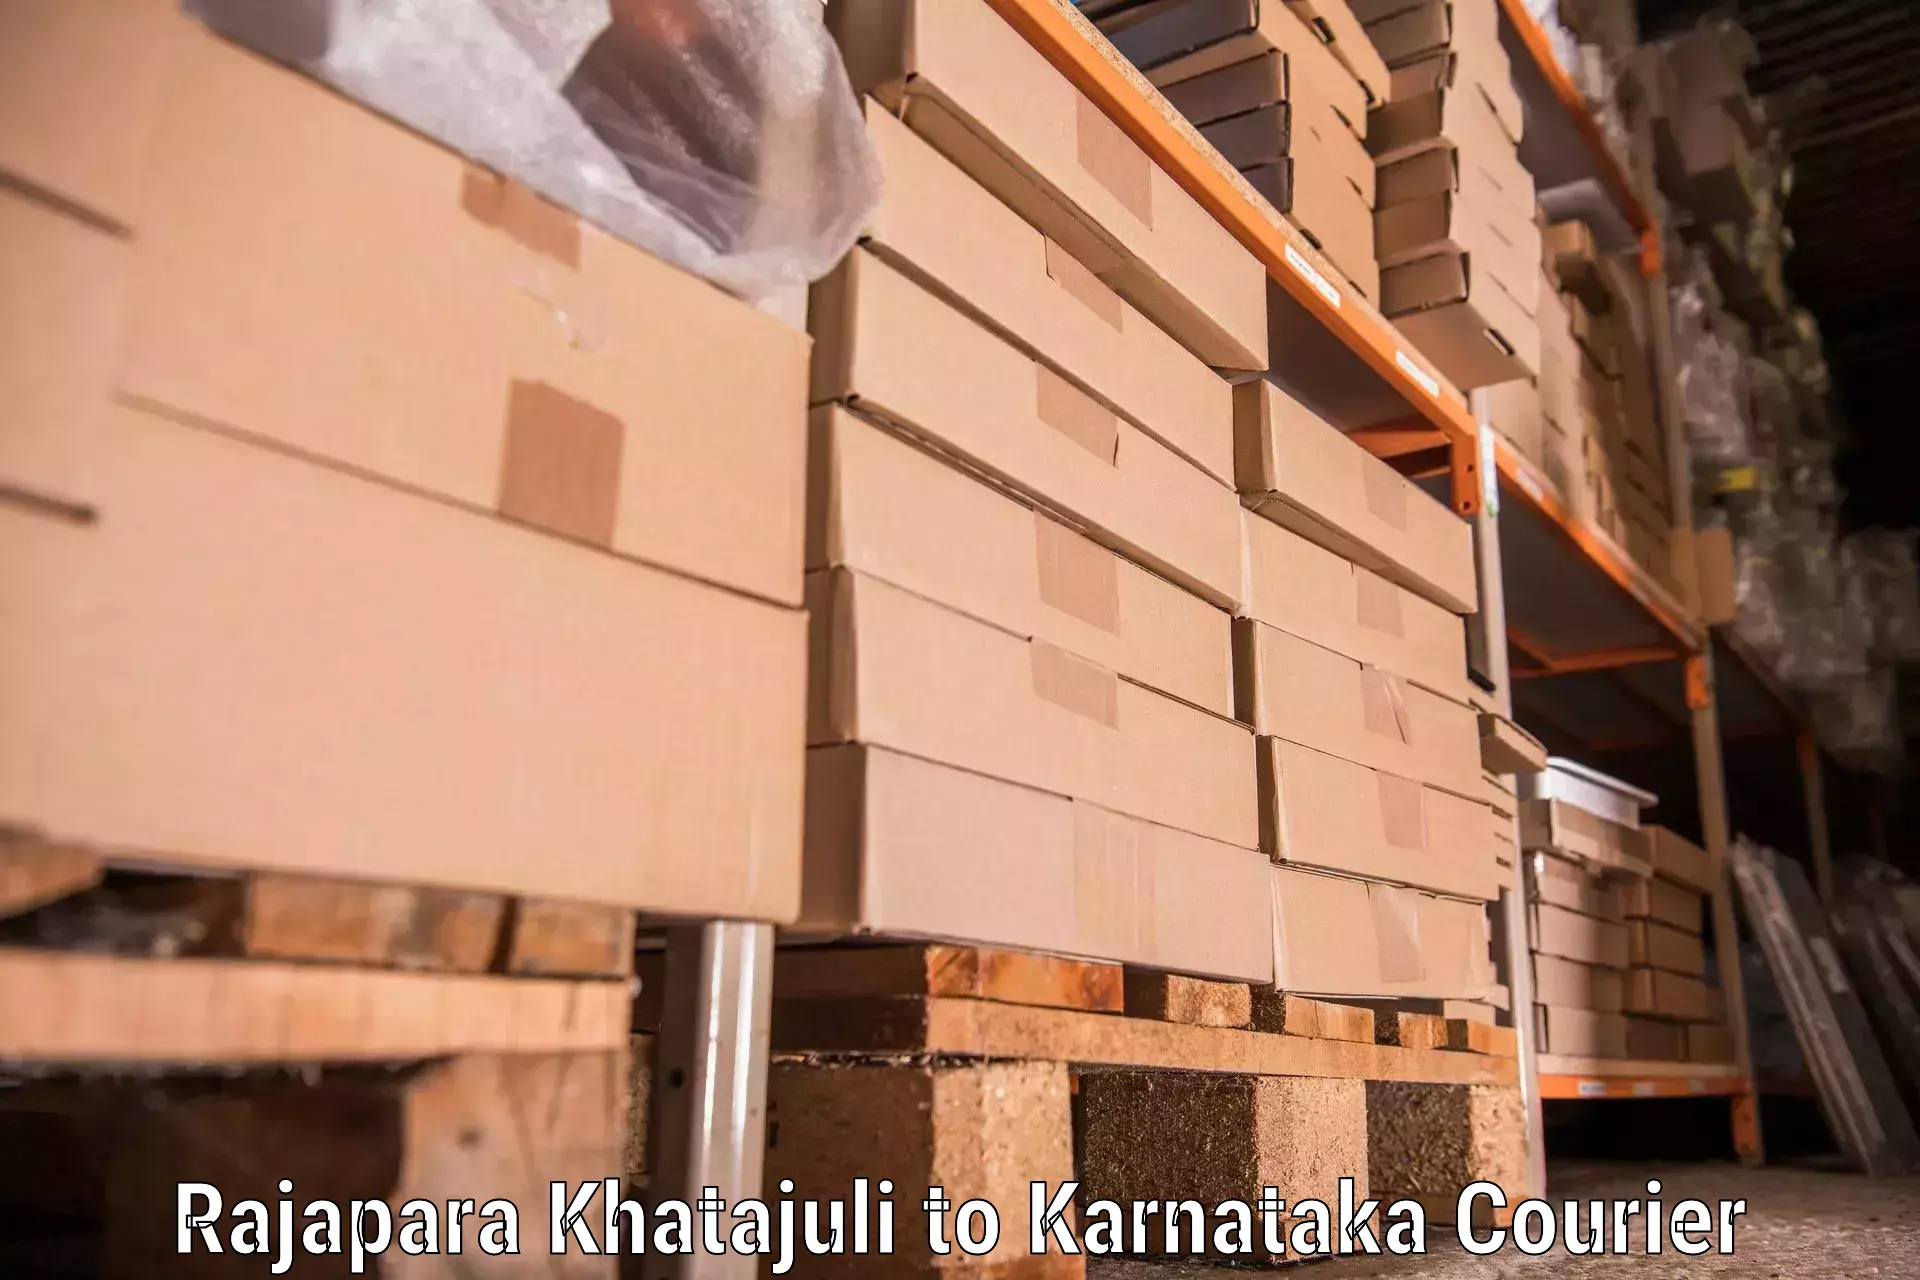 Home moving specialists Rajapara Khatajuli to Gangavathi